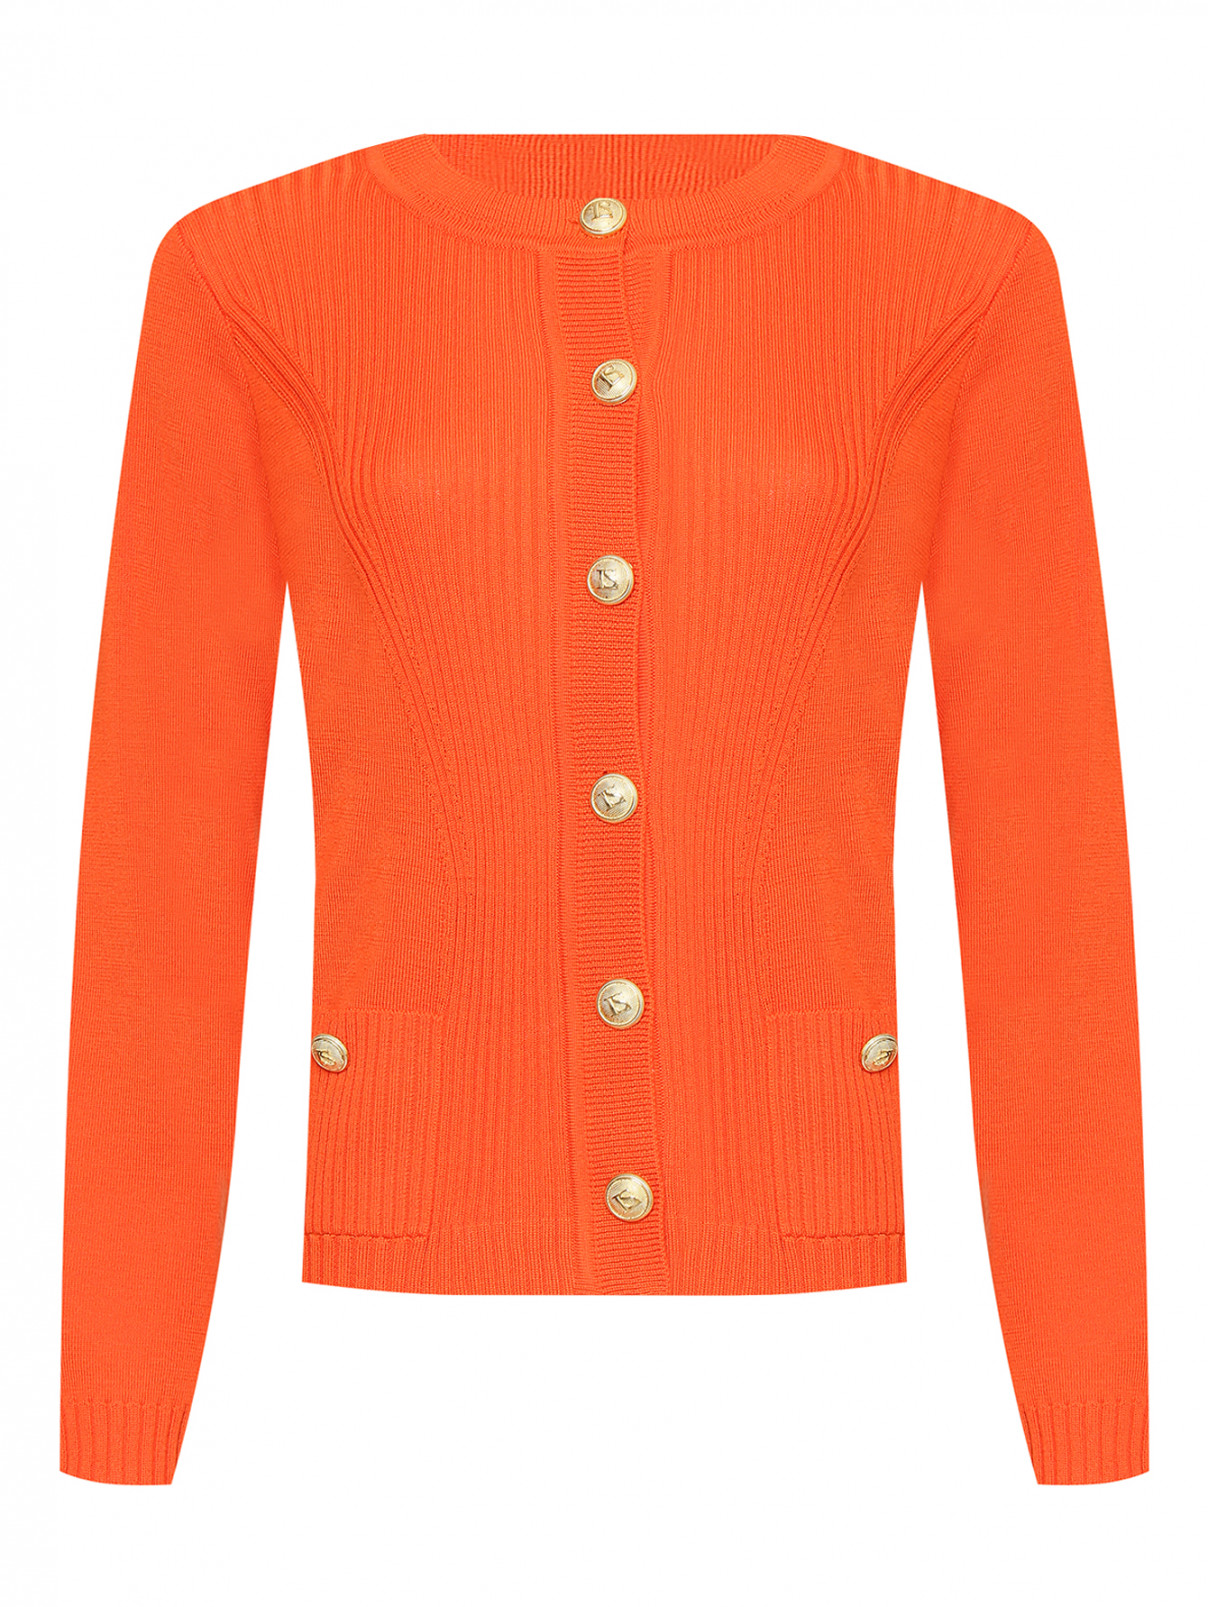 Кардиган из шерсти с крупными пуговицами Luisa Spagnoli  –  Общий вид  – Цвет:  Оранжевый